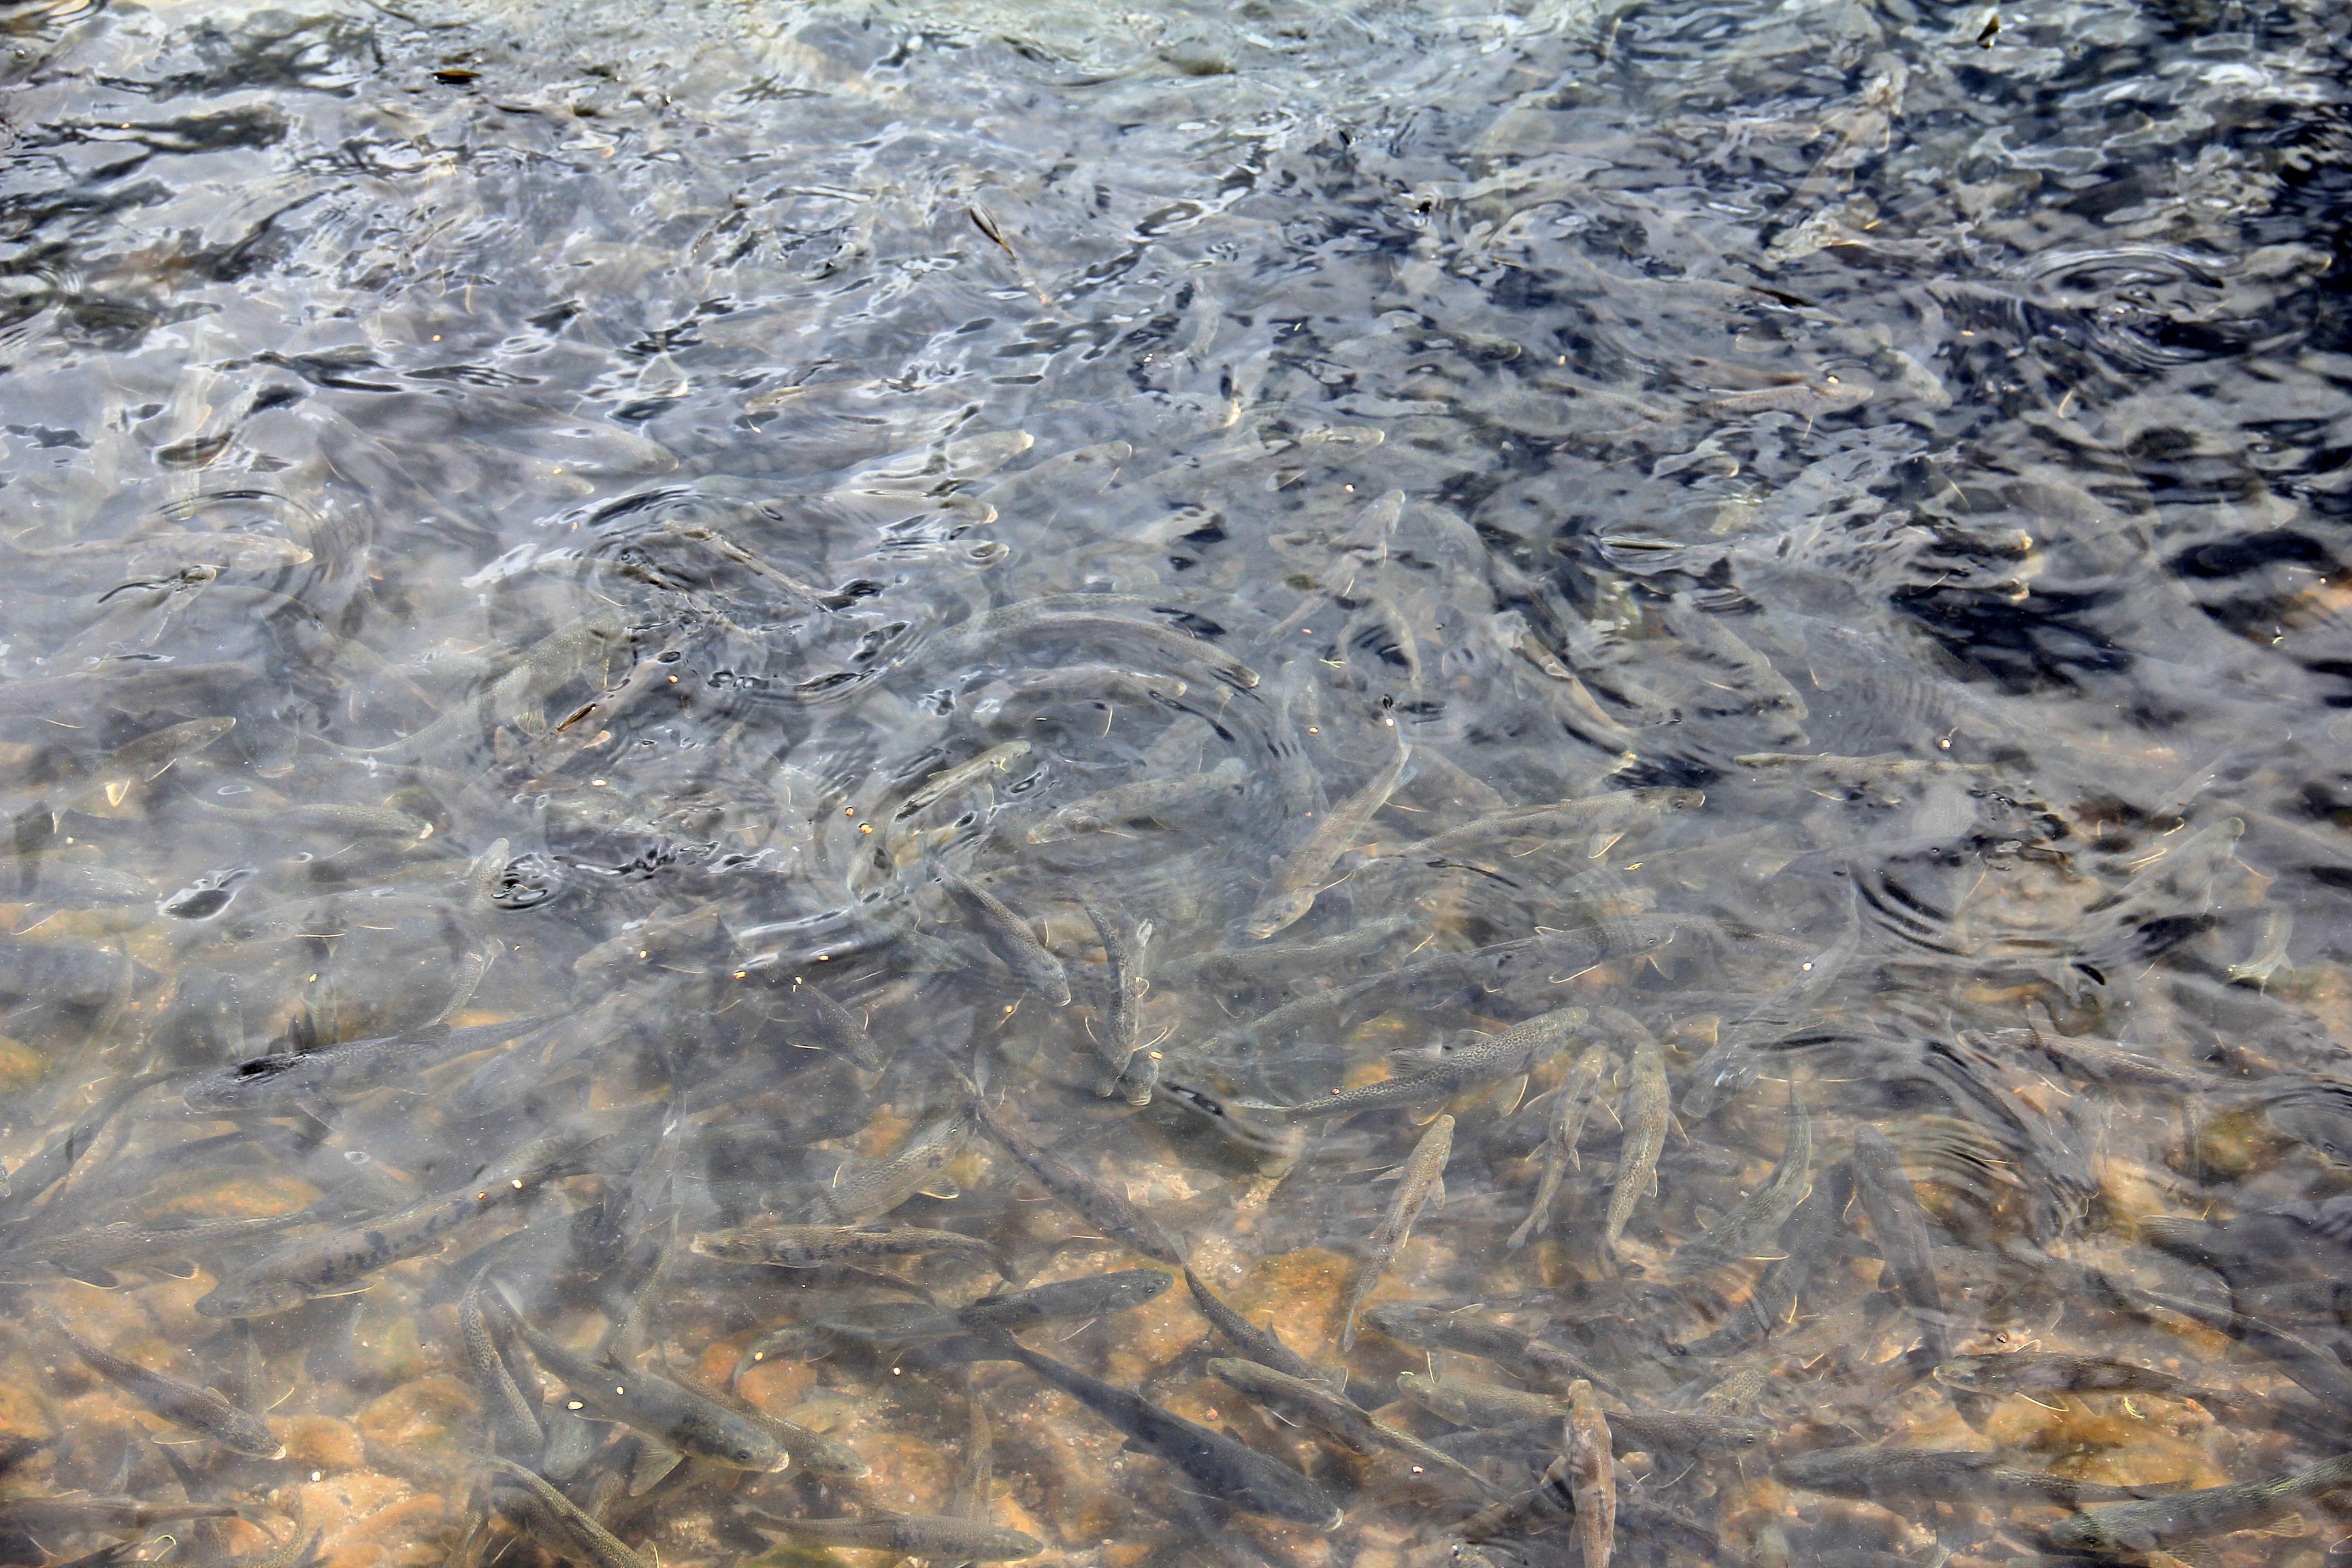 也是非常独特的景观,由于羊卓雍措湖里有很多的鱼,到每年的6月份的